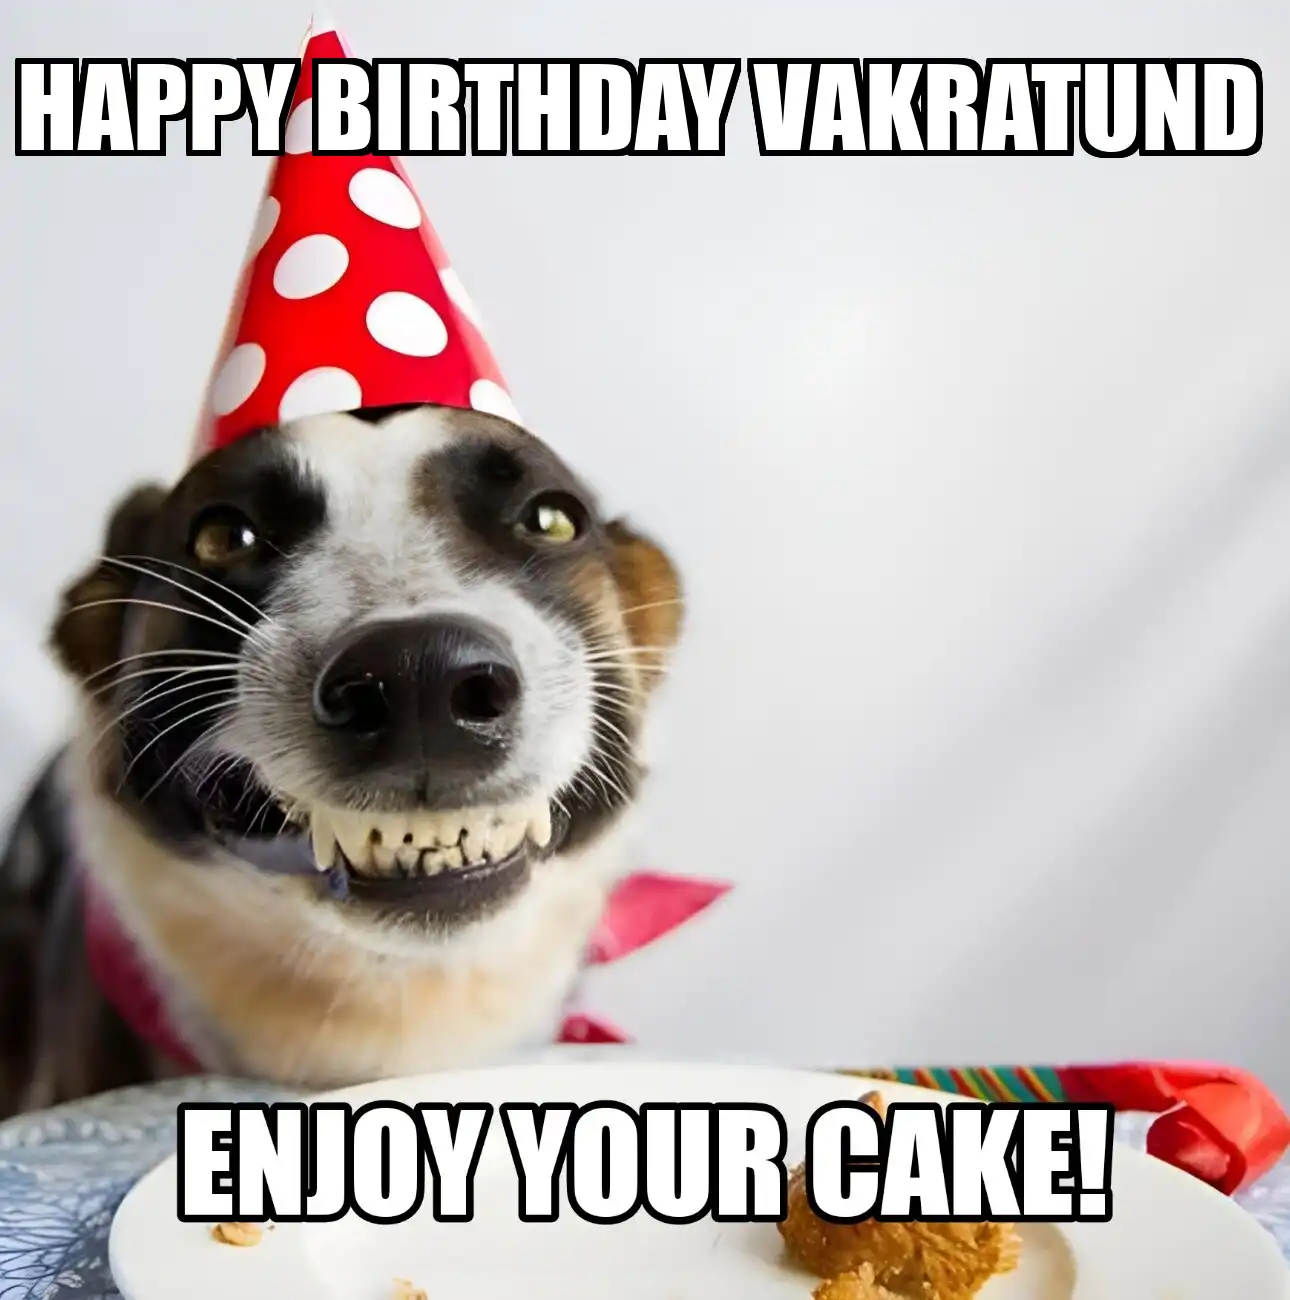 Happy Birthday Vakratund Enjoy Your Cake Dog Meme